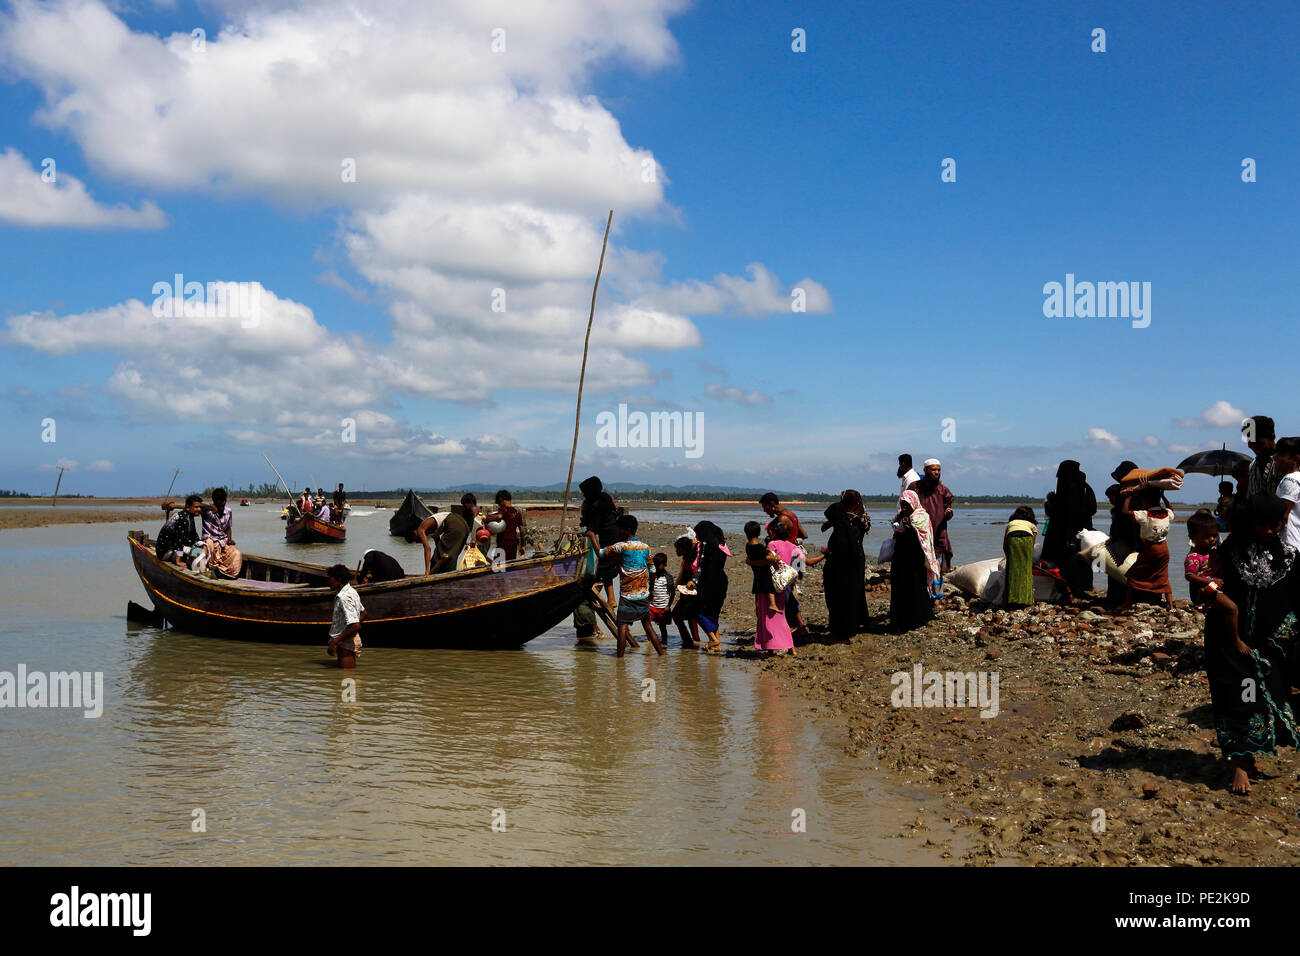 Réfugiés Rohingyas arrivés à Shah Porir Dweep de Myanmar traversant le fleuve Naf par bateau. Teknaf, Cox's Bazar (Bangladesh). Banque D'Images